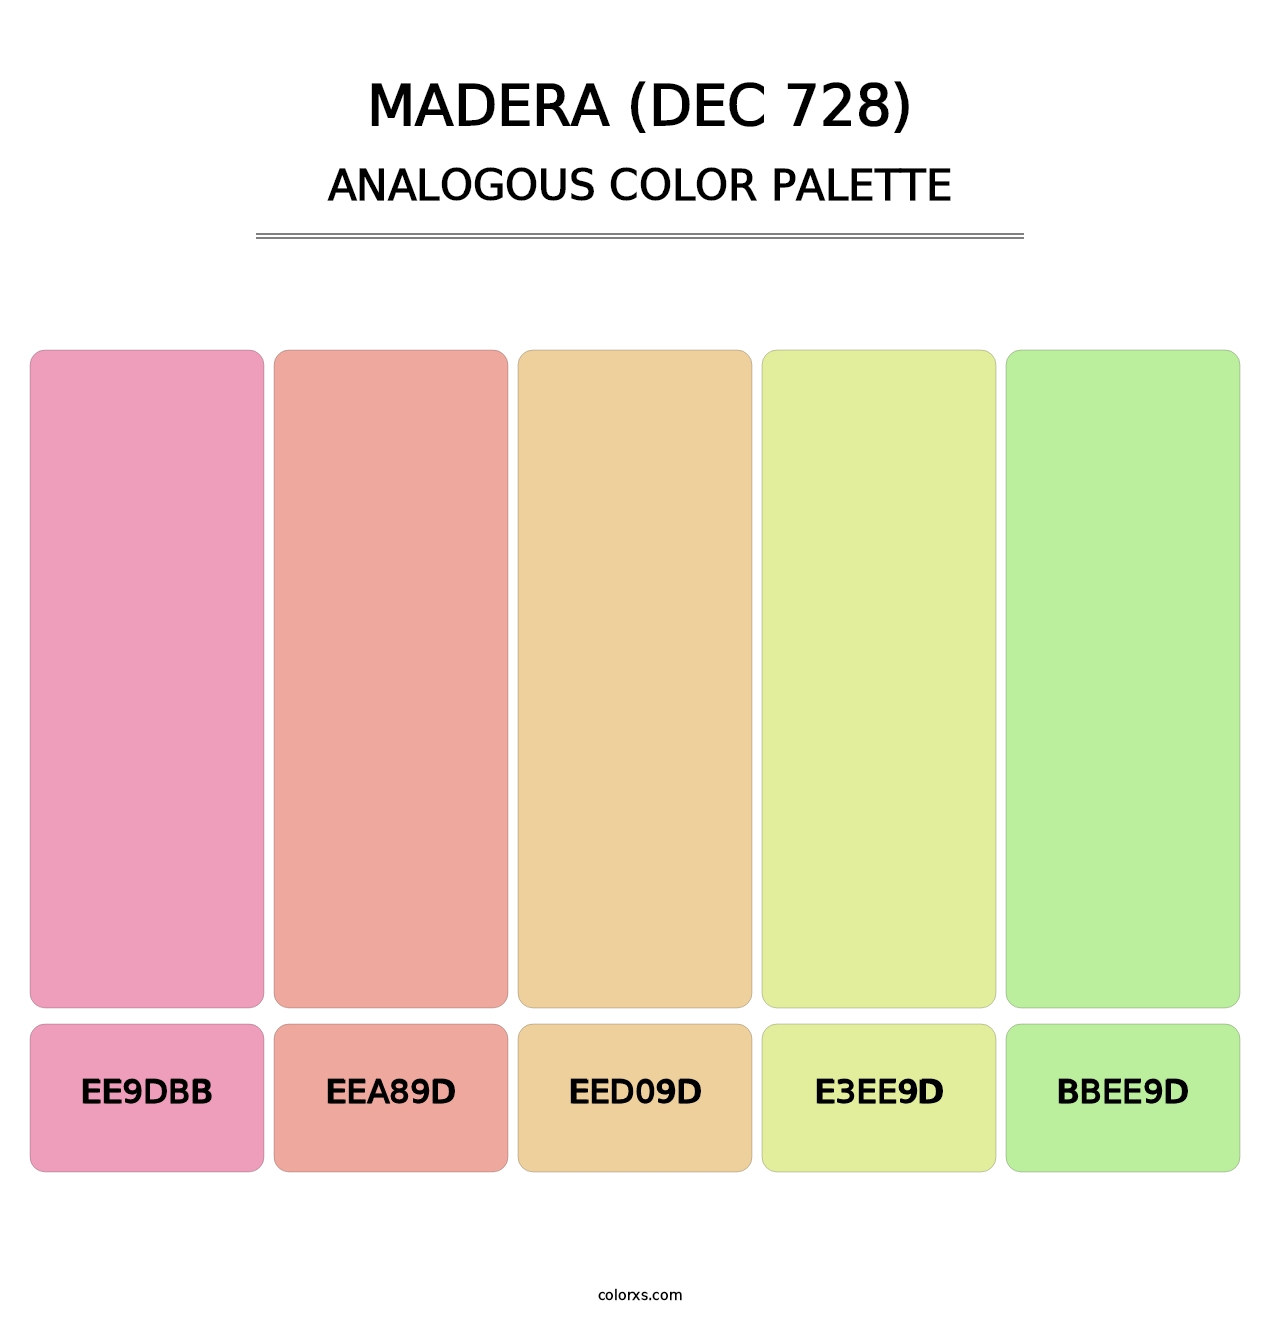 Madera (DEC 728) - Analogous Color Palette